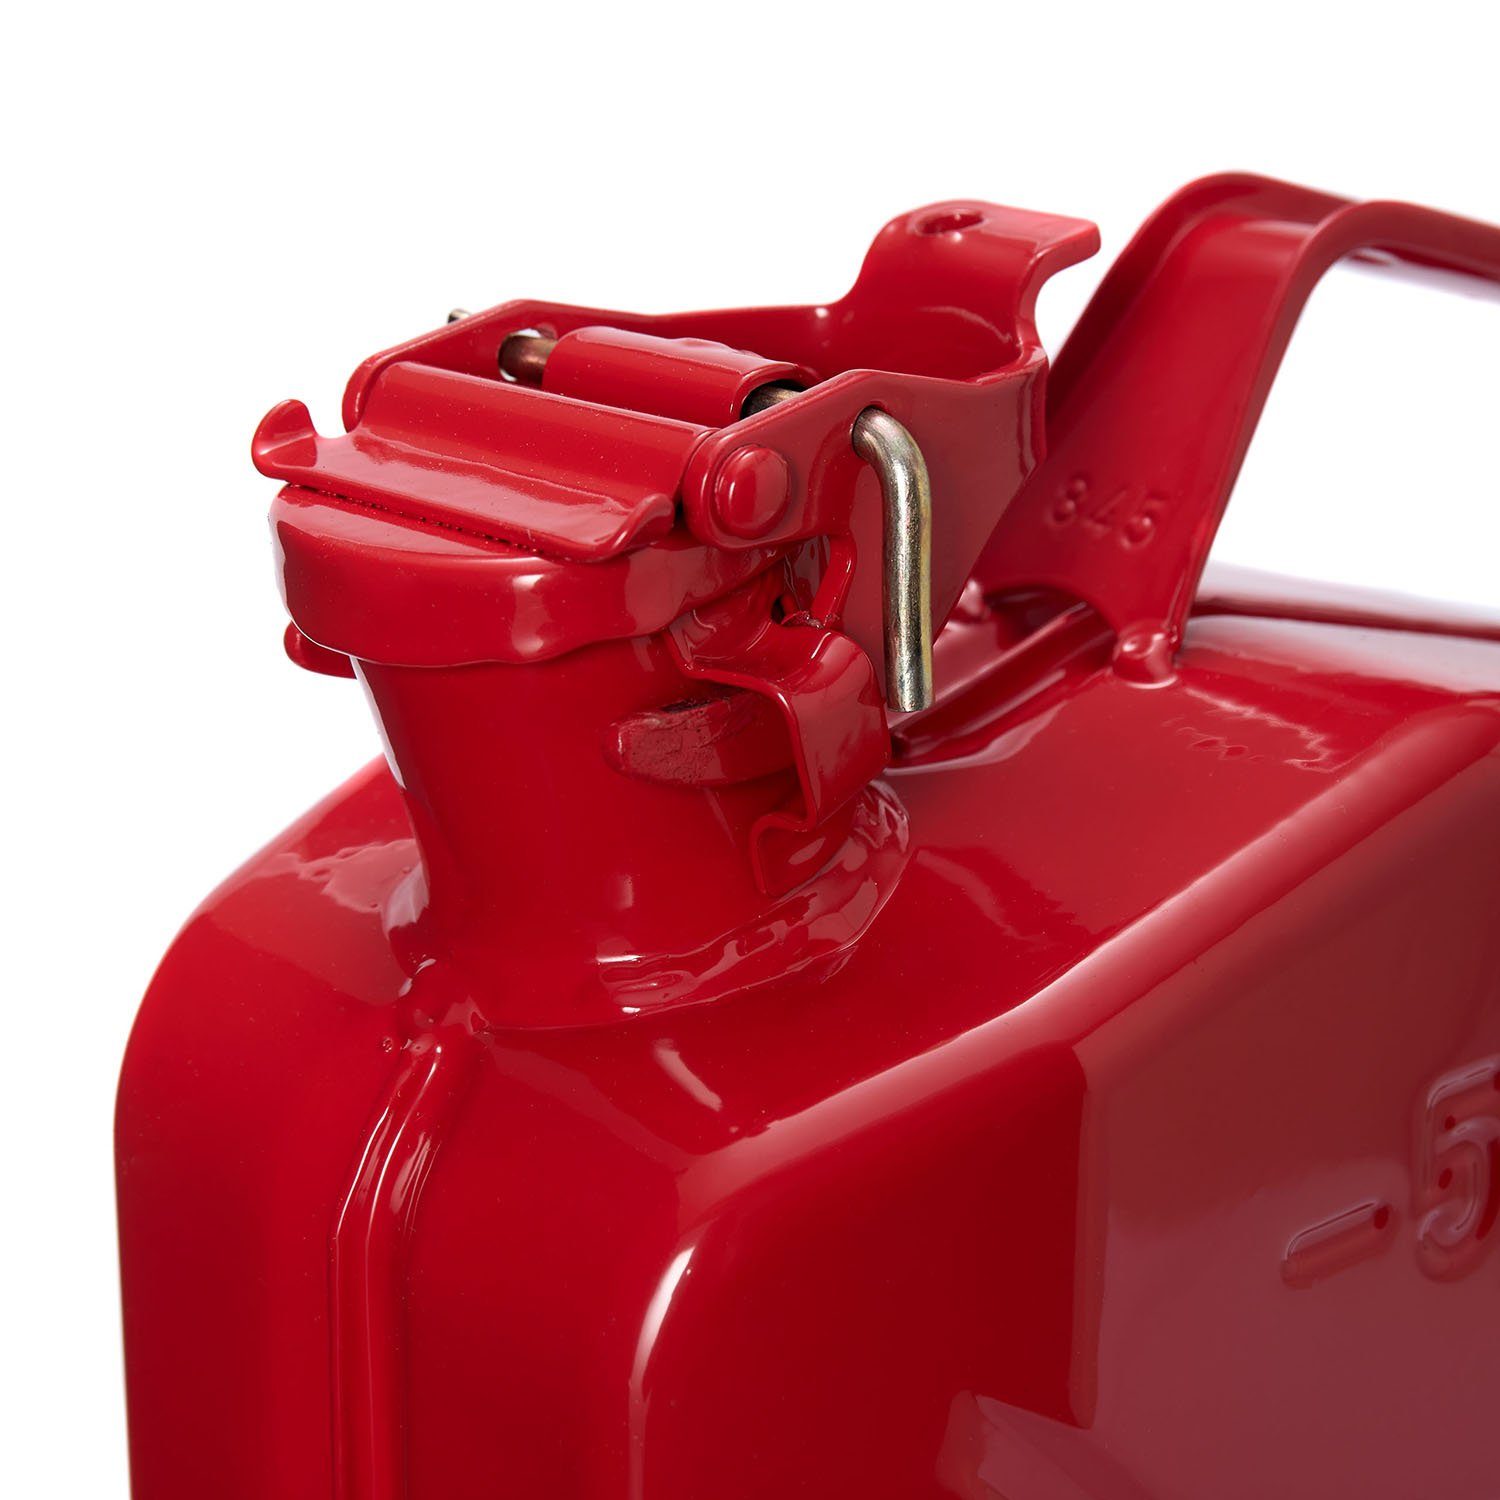 Metall Oxid7 Reservekanister & 5L Rot St), Diesel Benzin Benzinkanister (1